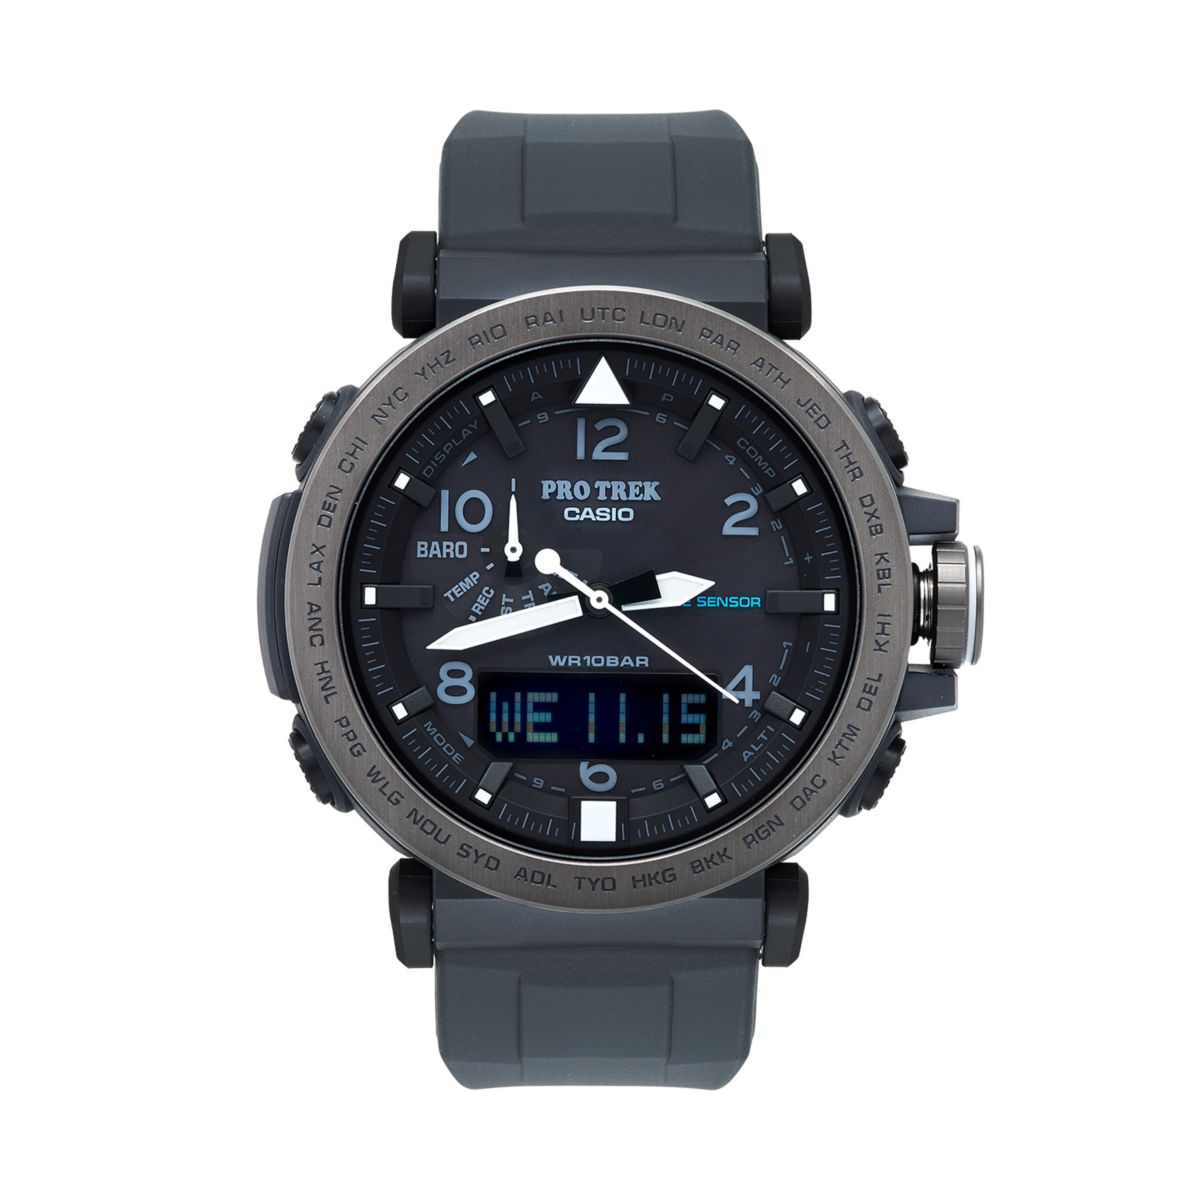 Аналогово-цифровые мужские часы Casio PRO TREK с тройным датчиком и жесткими солнечными батареями - PRG650Y-1 Casio